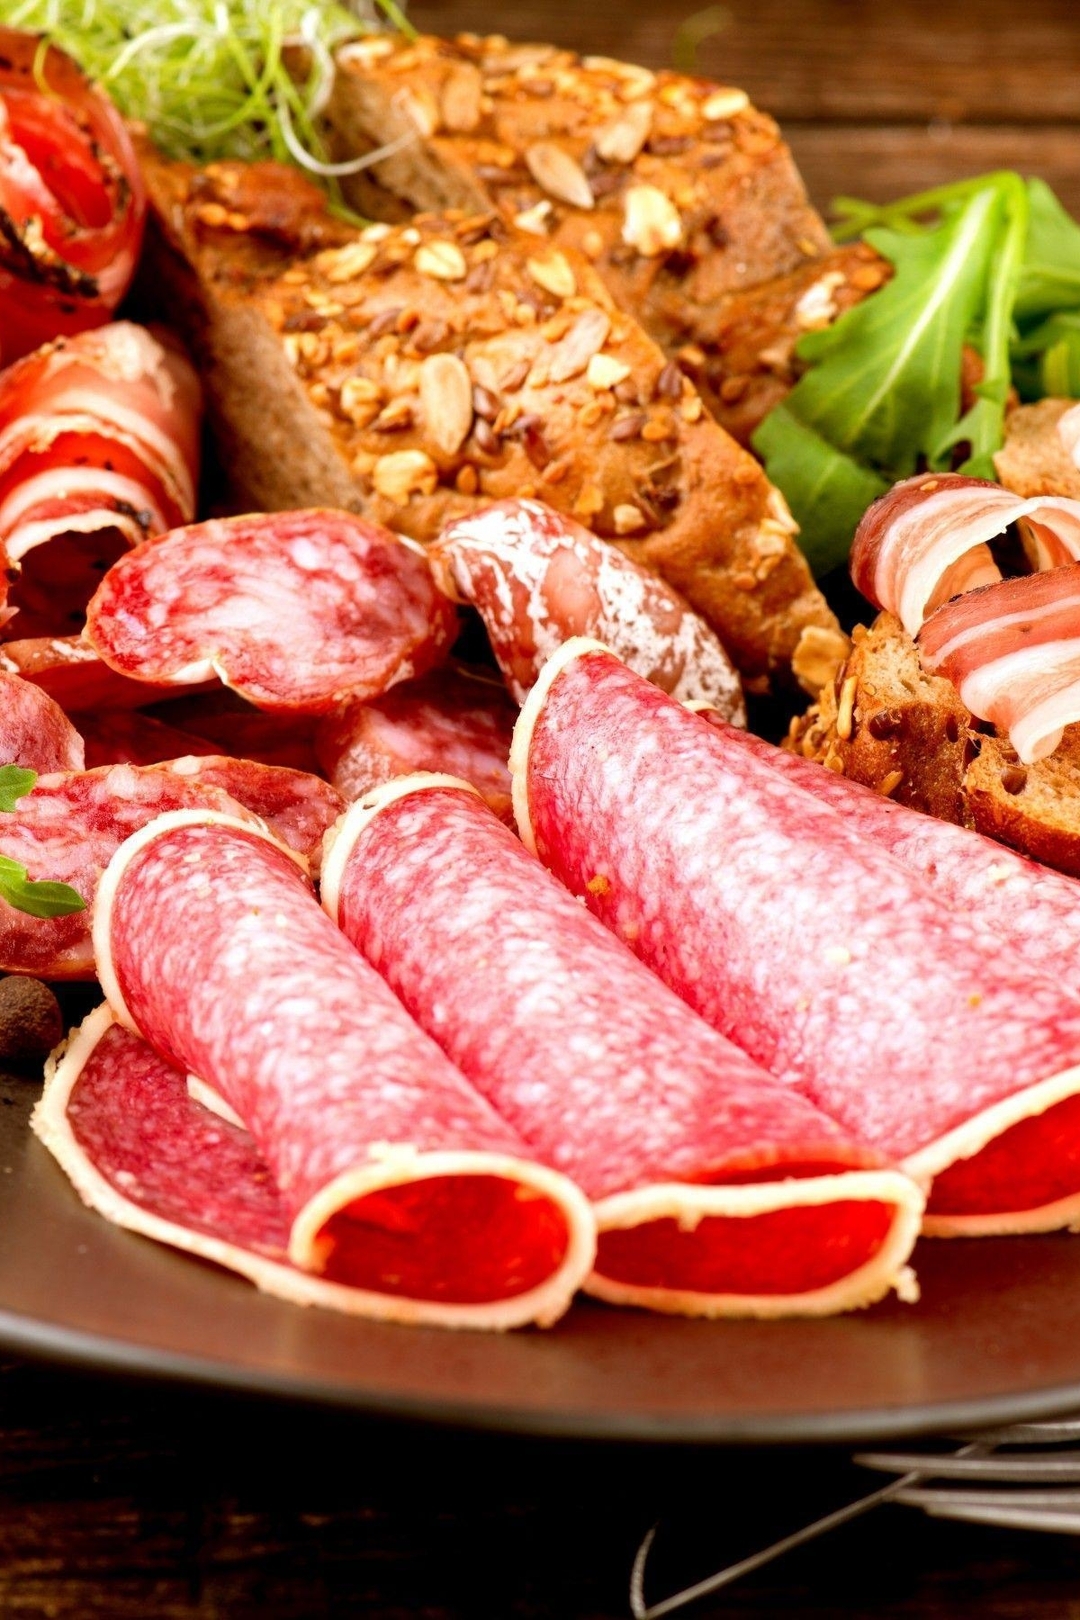 Image: Meats, meat, sausage, salami, loaf, plate, fork